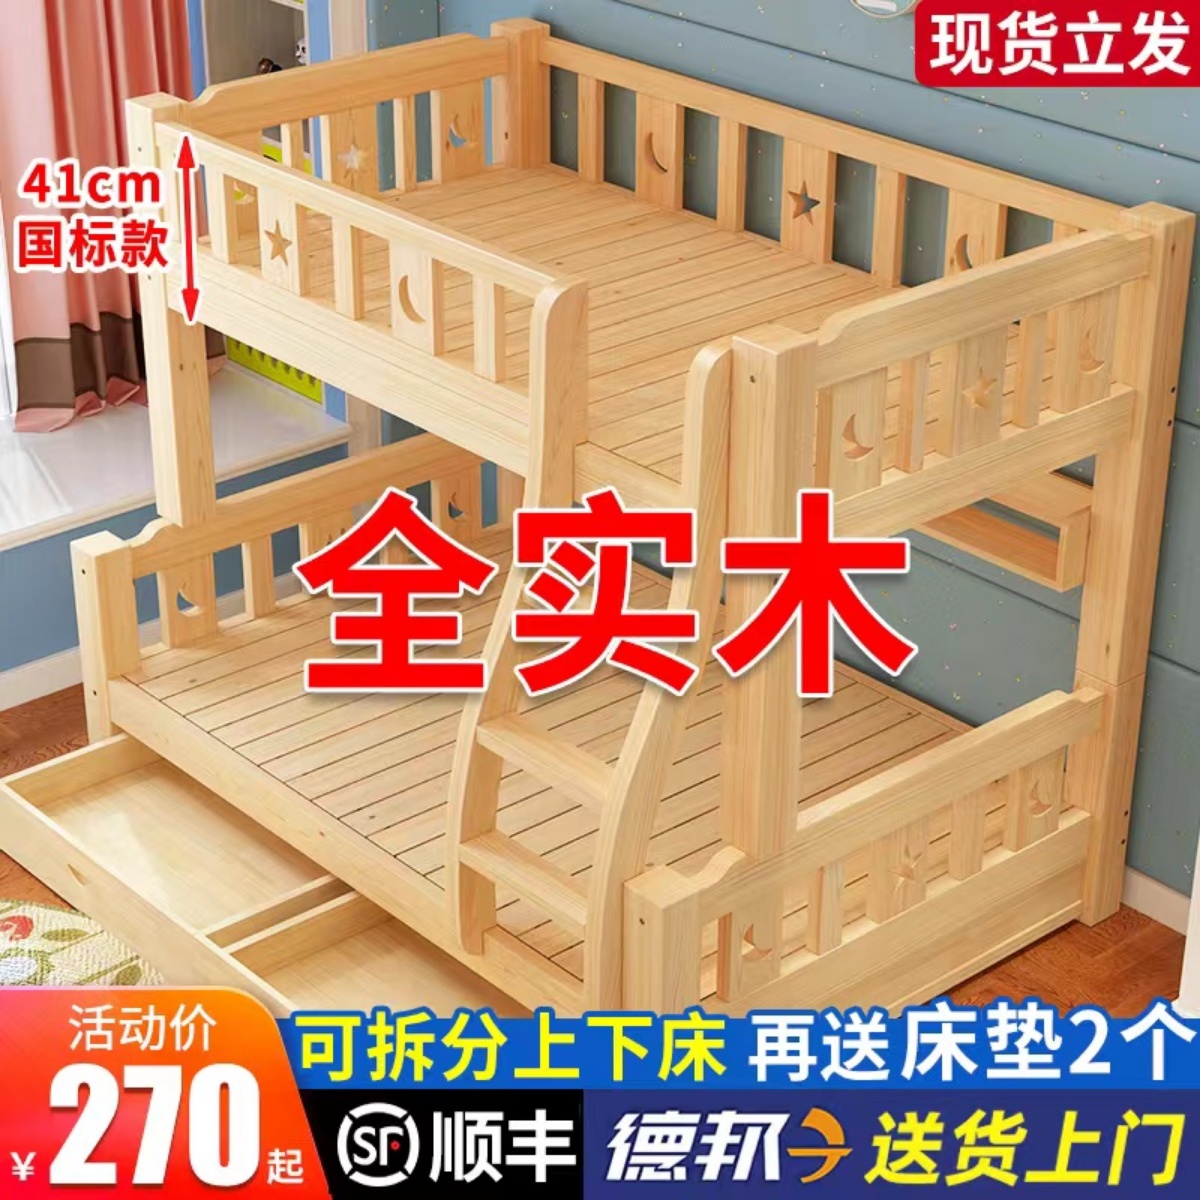 上下床双层床全实木子母床多功能小户型双人高低床儿童上下铺木床